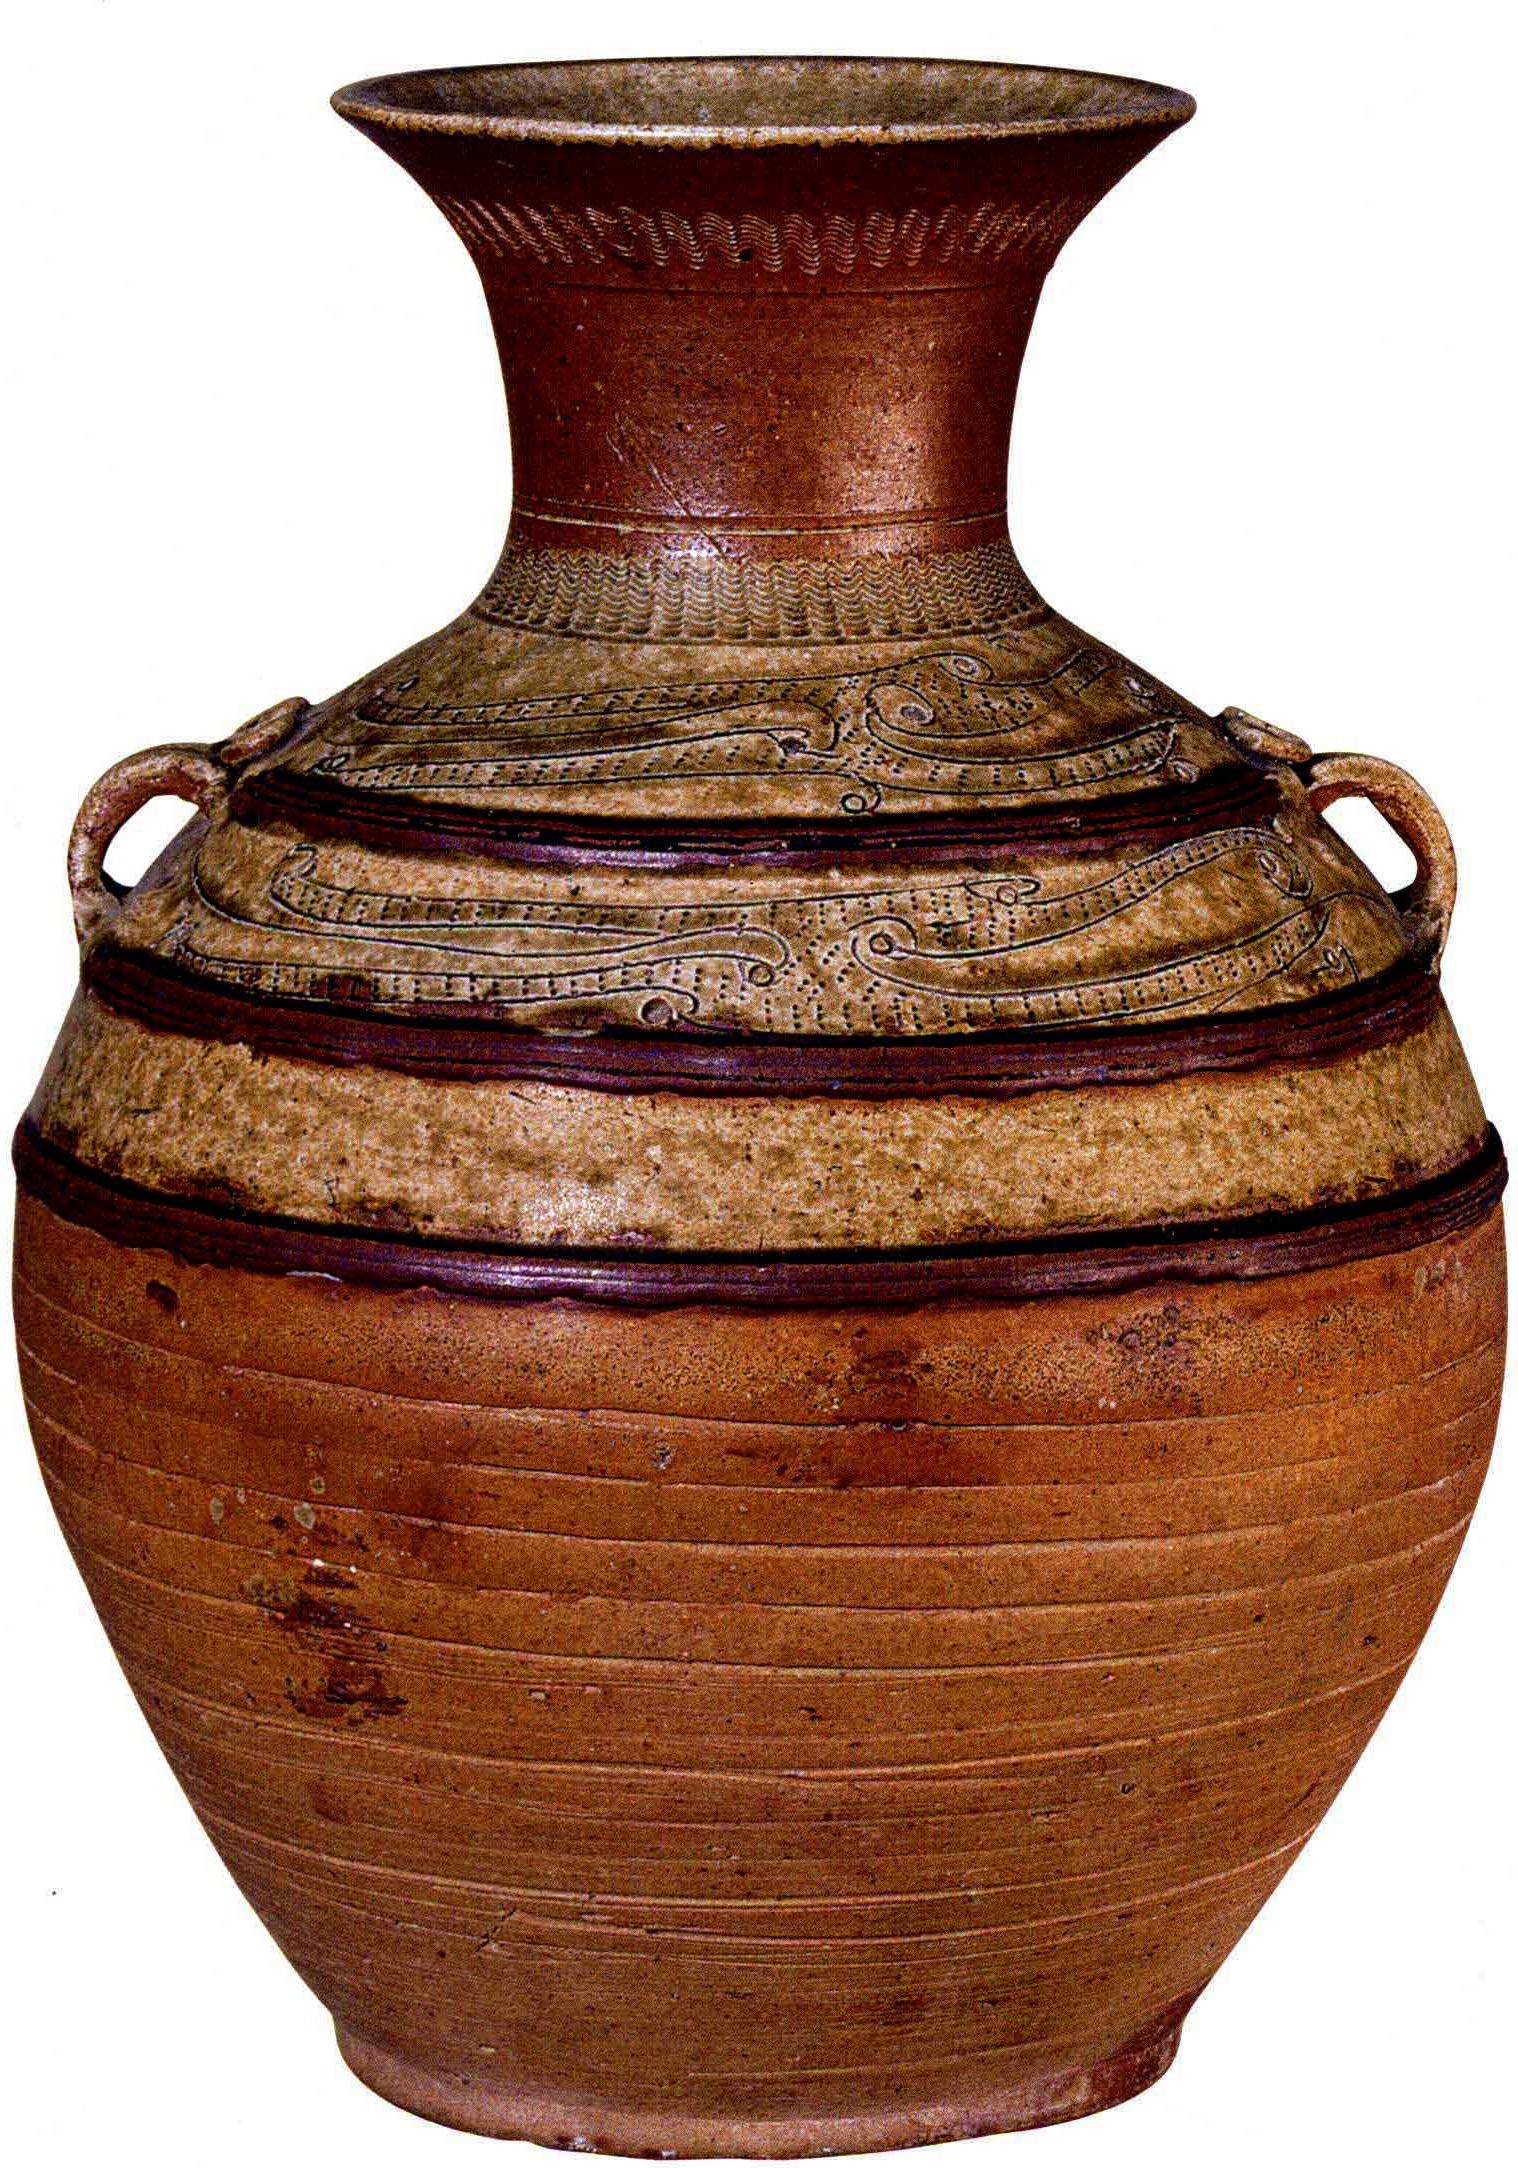 中国陶瓷文化,故宫陶瓷经典,商,西周,战国,西汉的经典陶器欣赏